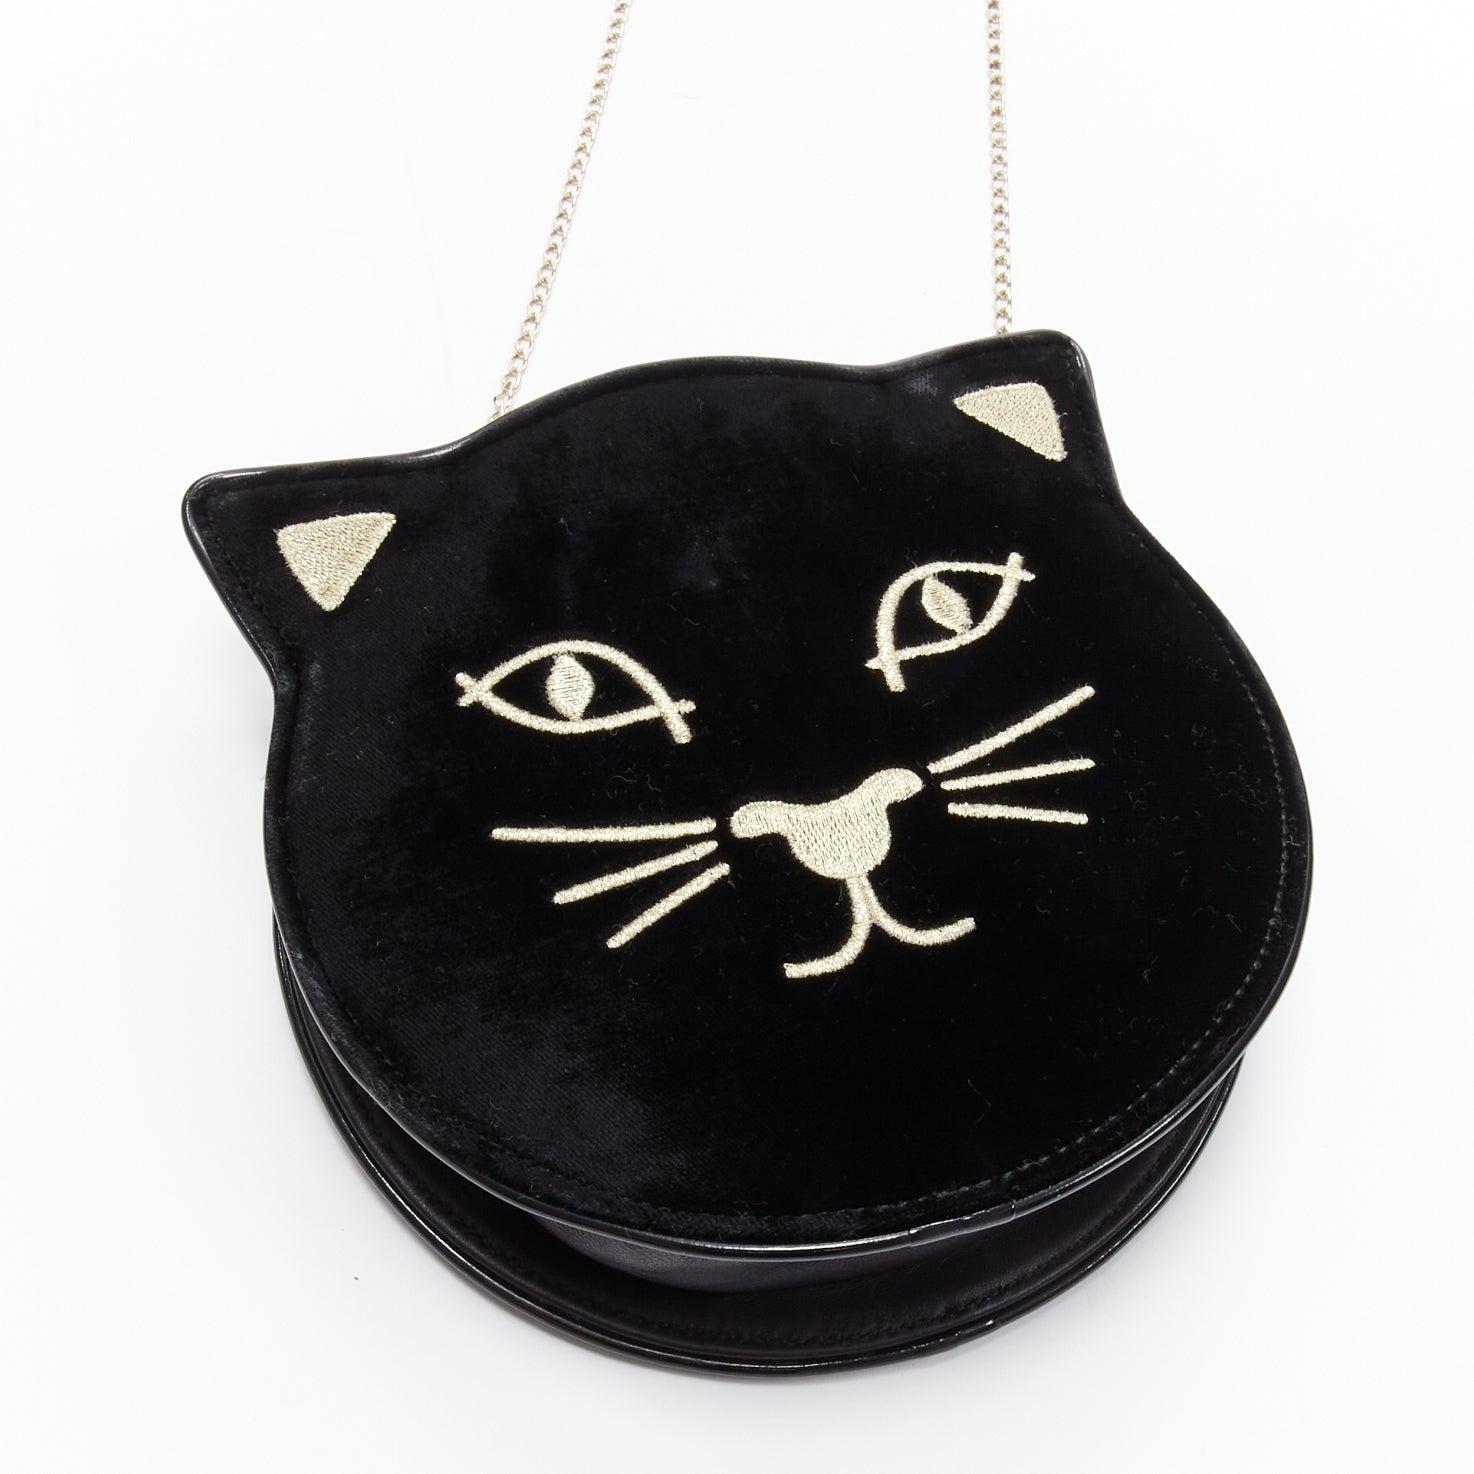 CHARLOTTE OLYMPIA Kitty black velvet gold embroidered crossbody bag 1